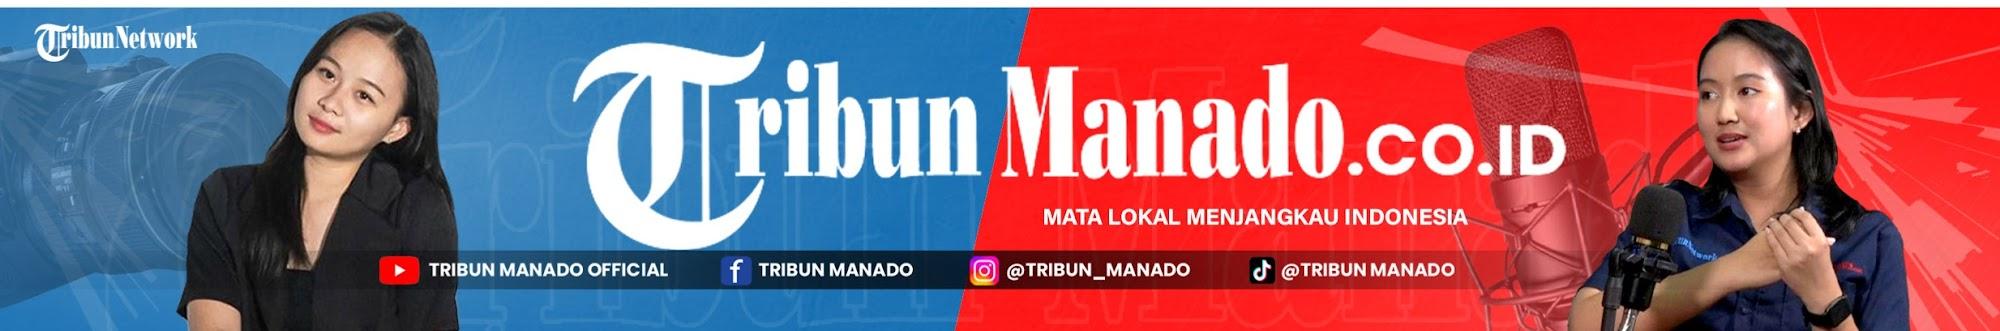 Tribun Manado Official